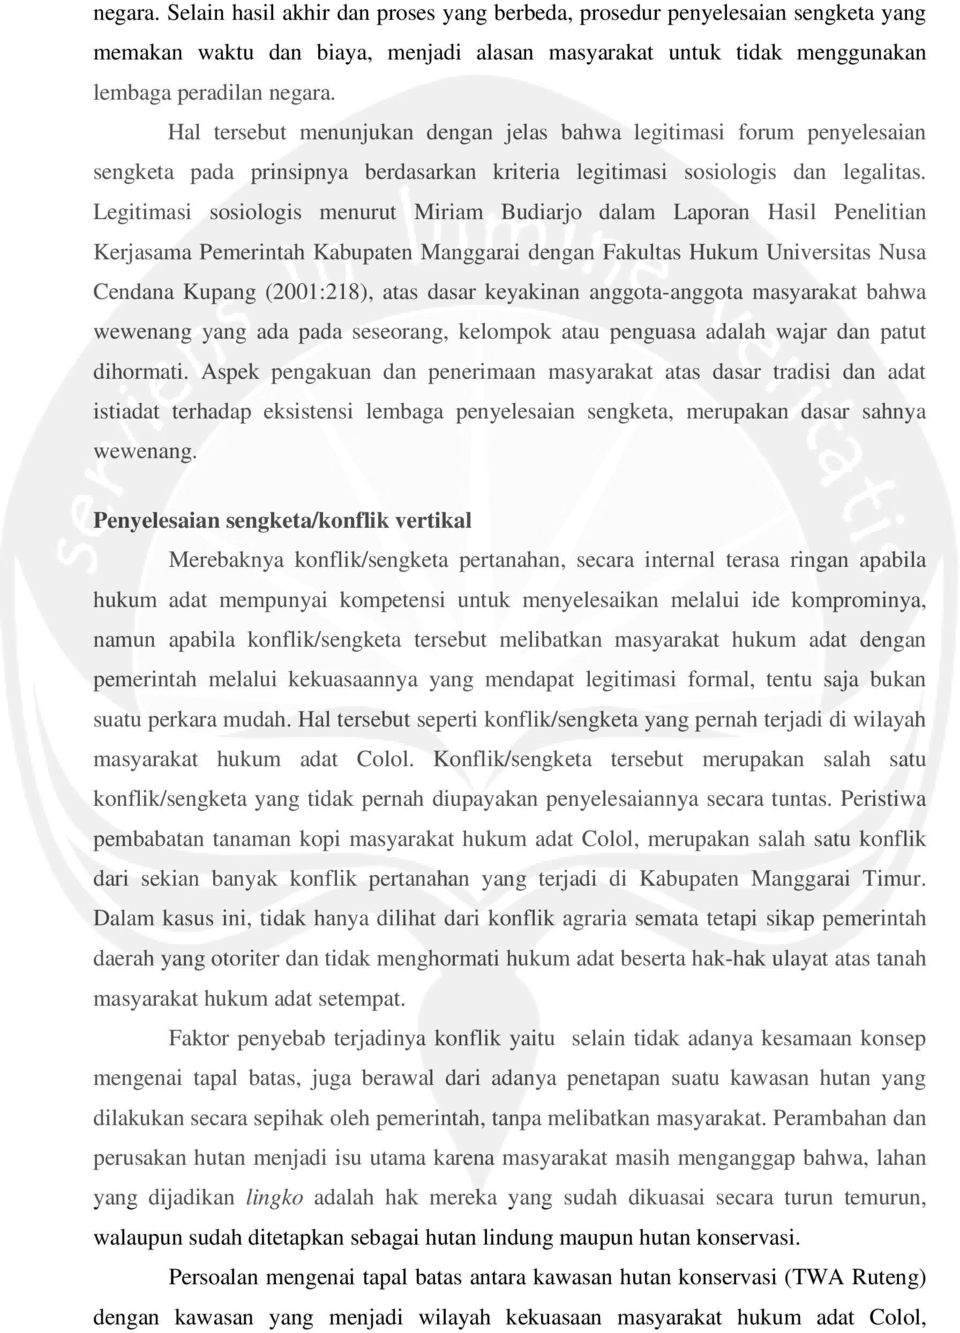 Legitimasi sosiologis menurut Miriam Budiarjo dalam Laporan Hasil Penelitian Kerjasama Pemerintah Kabupaten Manggarai dengan Fakultas Hukum Universitas Nusa Cendana Kupang (2001:218), atas dasar